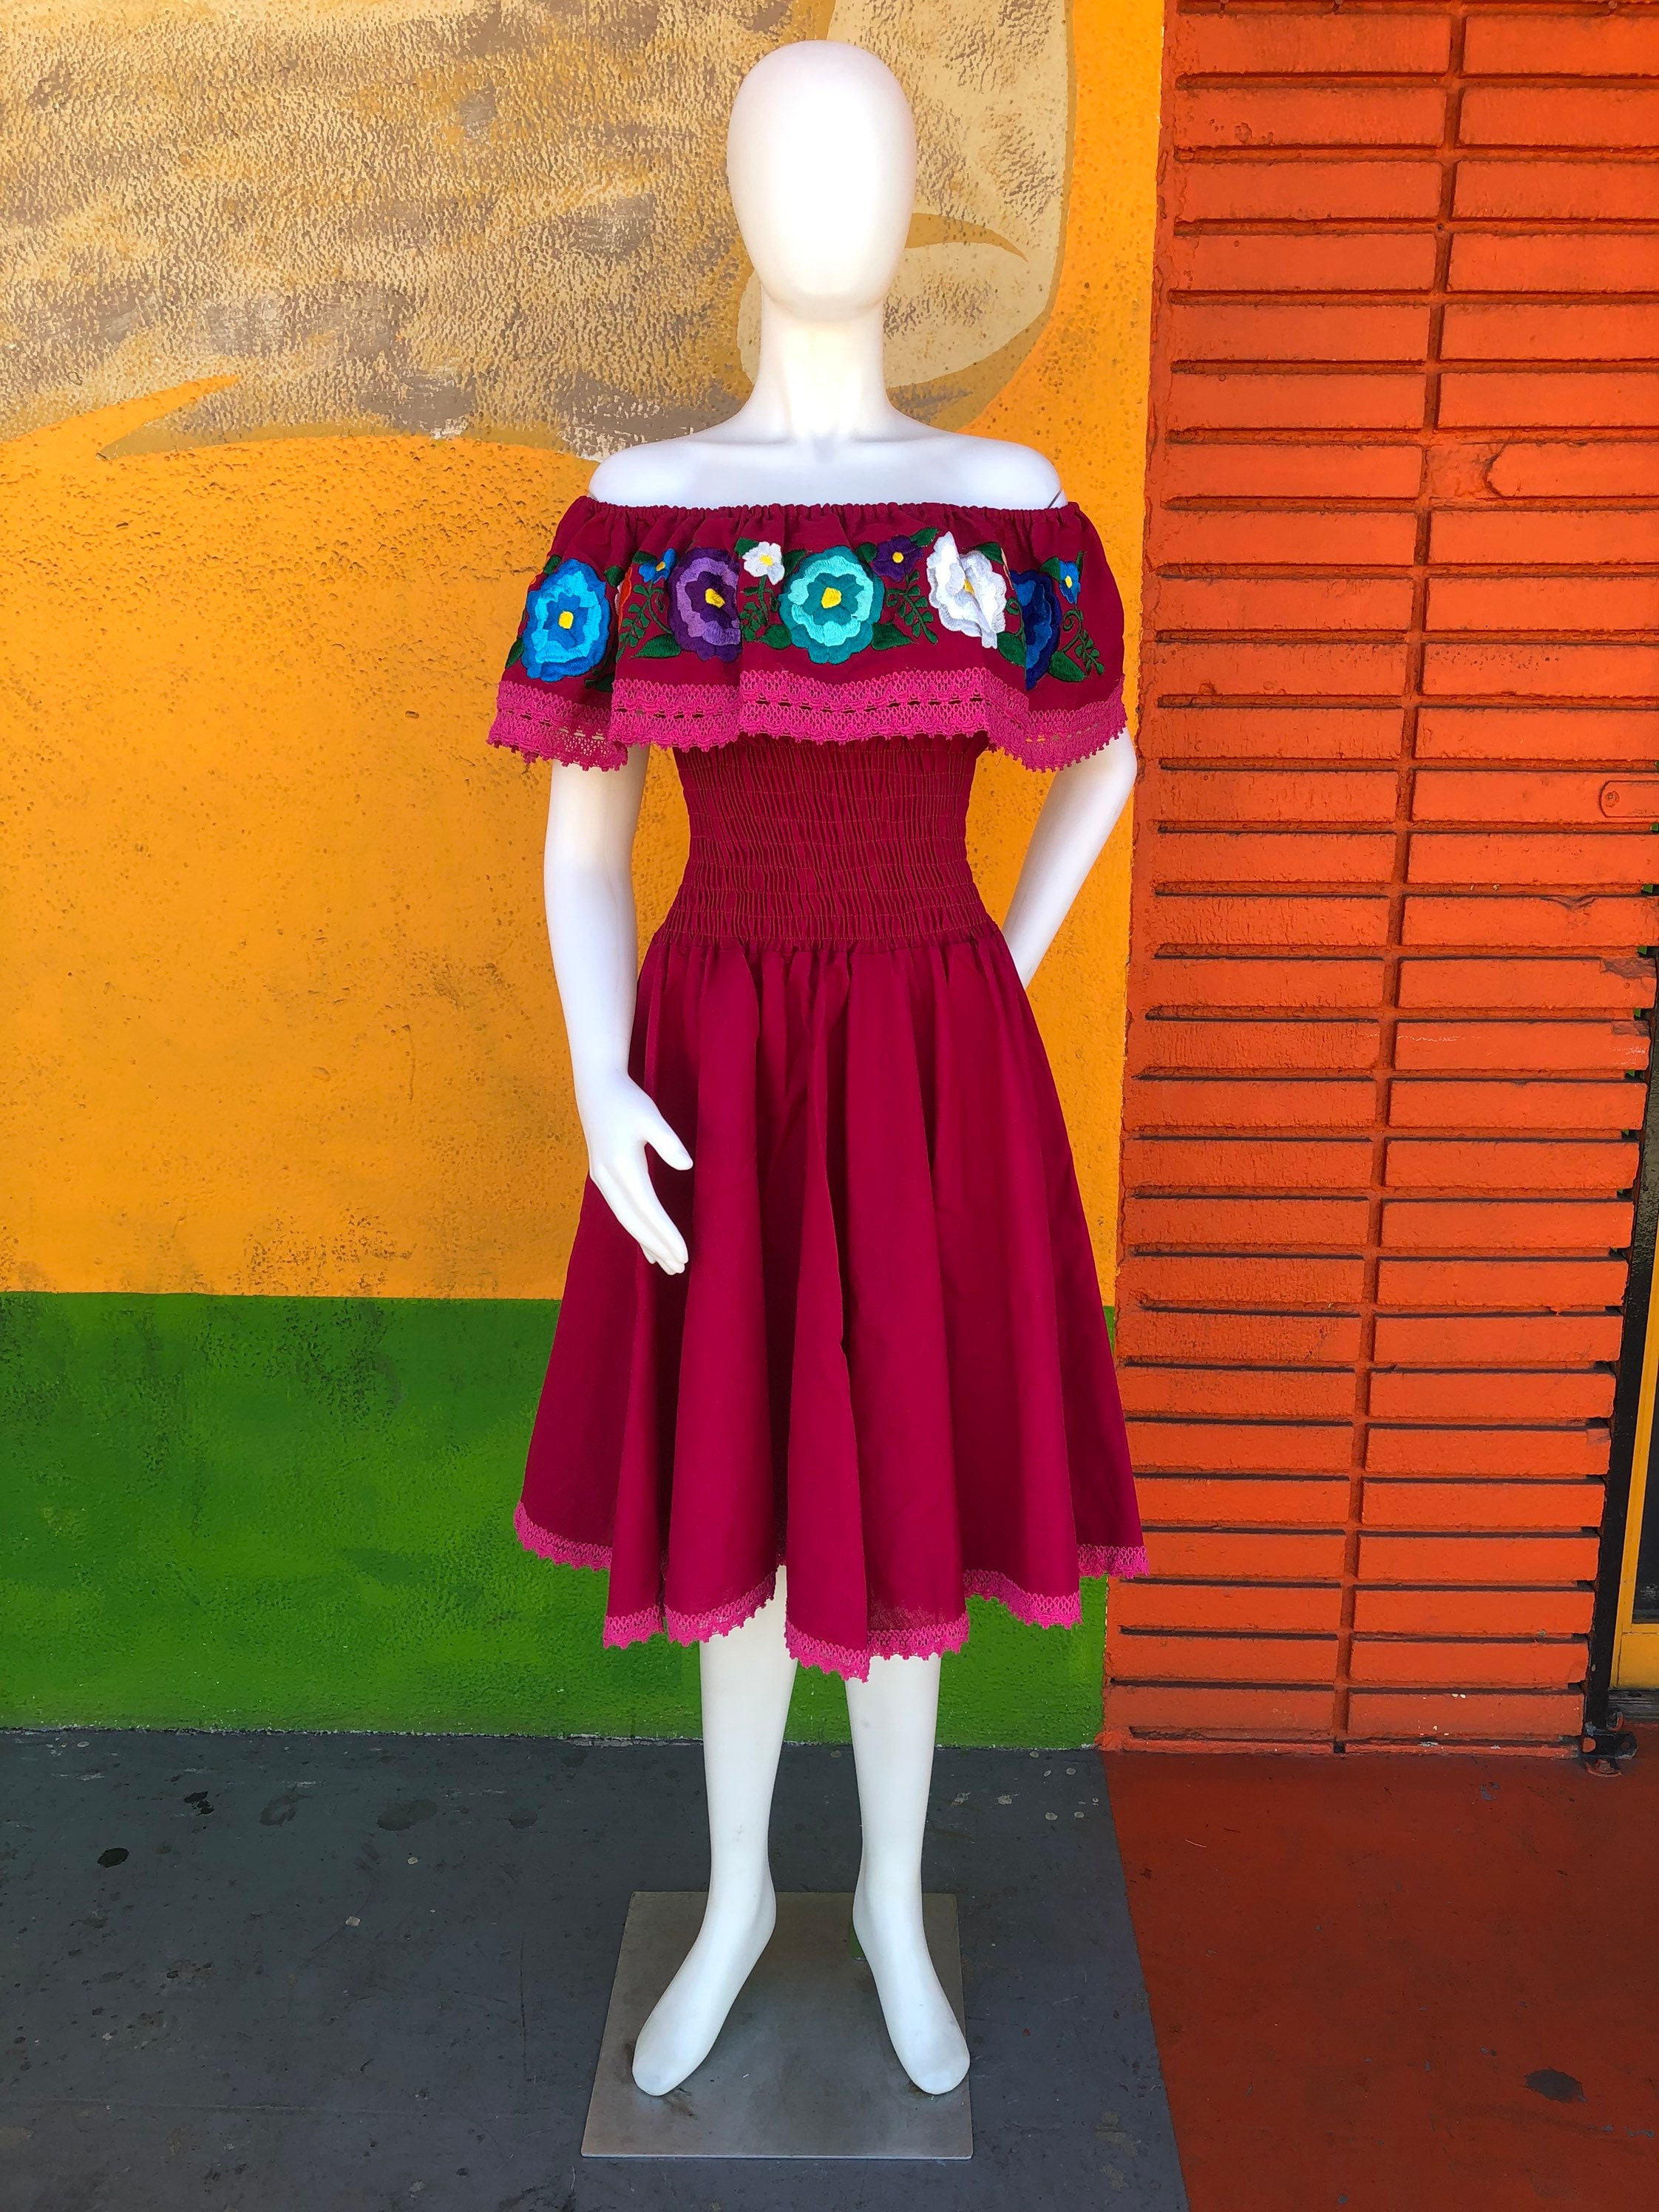 Vestido mexicano, off the shoulder dress, vestido circular, vestido artesanal, fiesta 5 de mayo, day of the dead